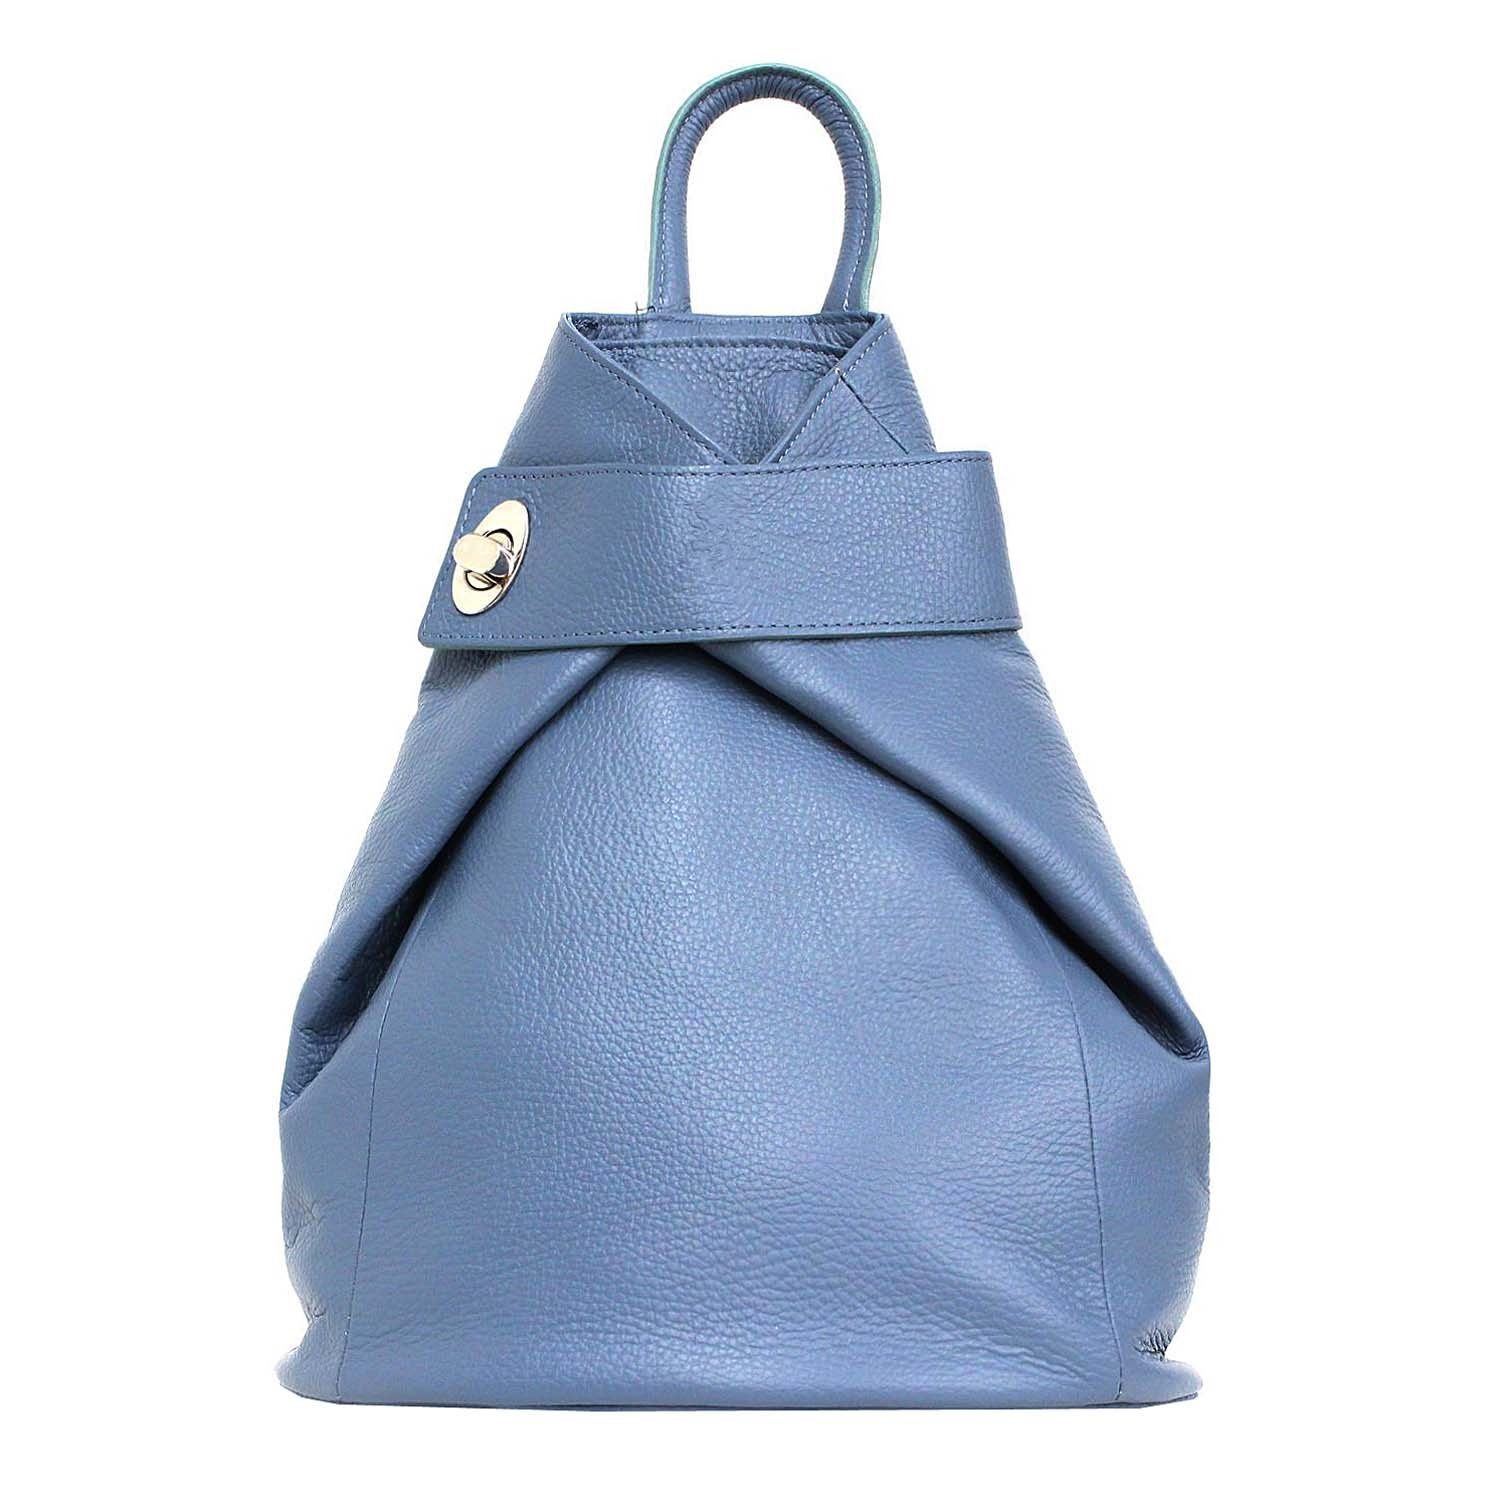 ITALYSHOP24 Rucksack Made in Italy Damen Leder Rucksack Schultertasche, als  Umhängetasche & Handtasche tragbar, XL Shopper